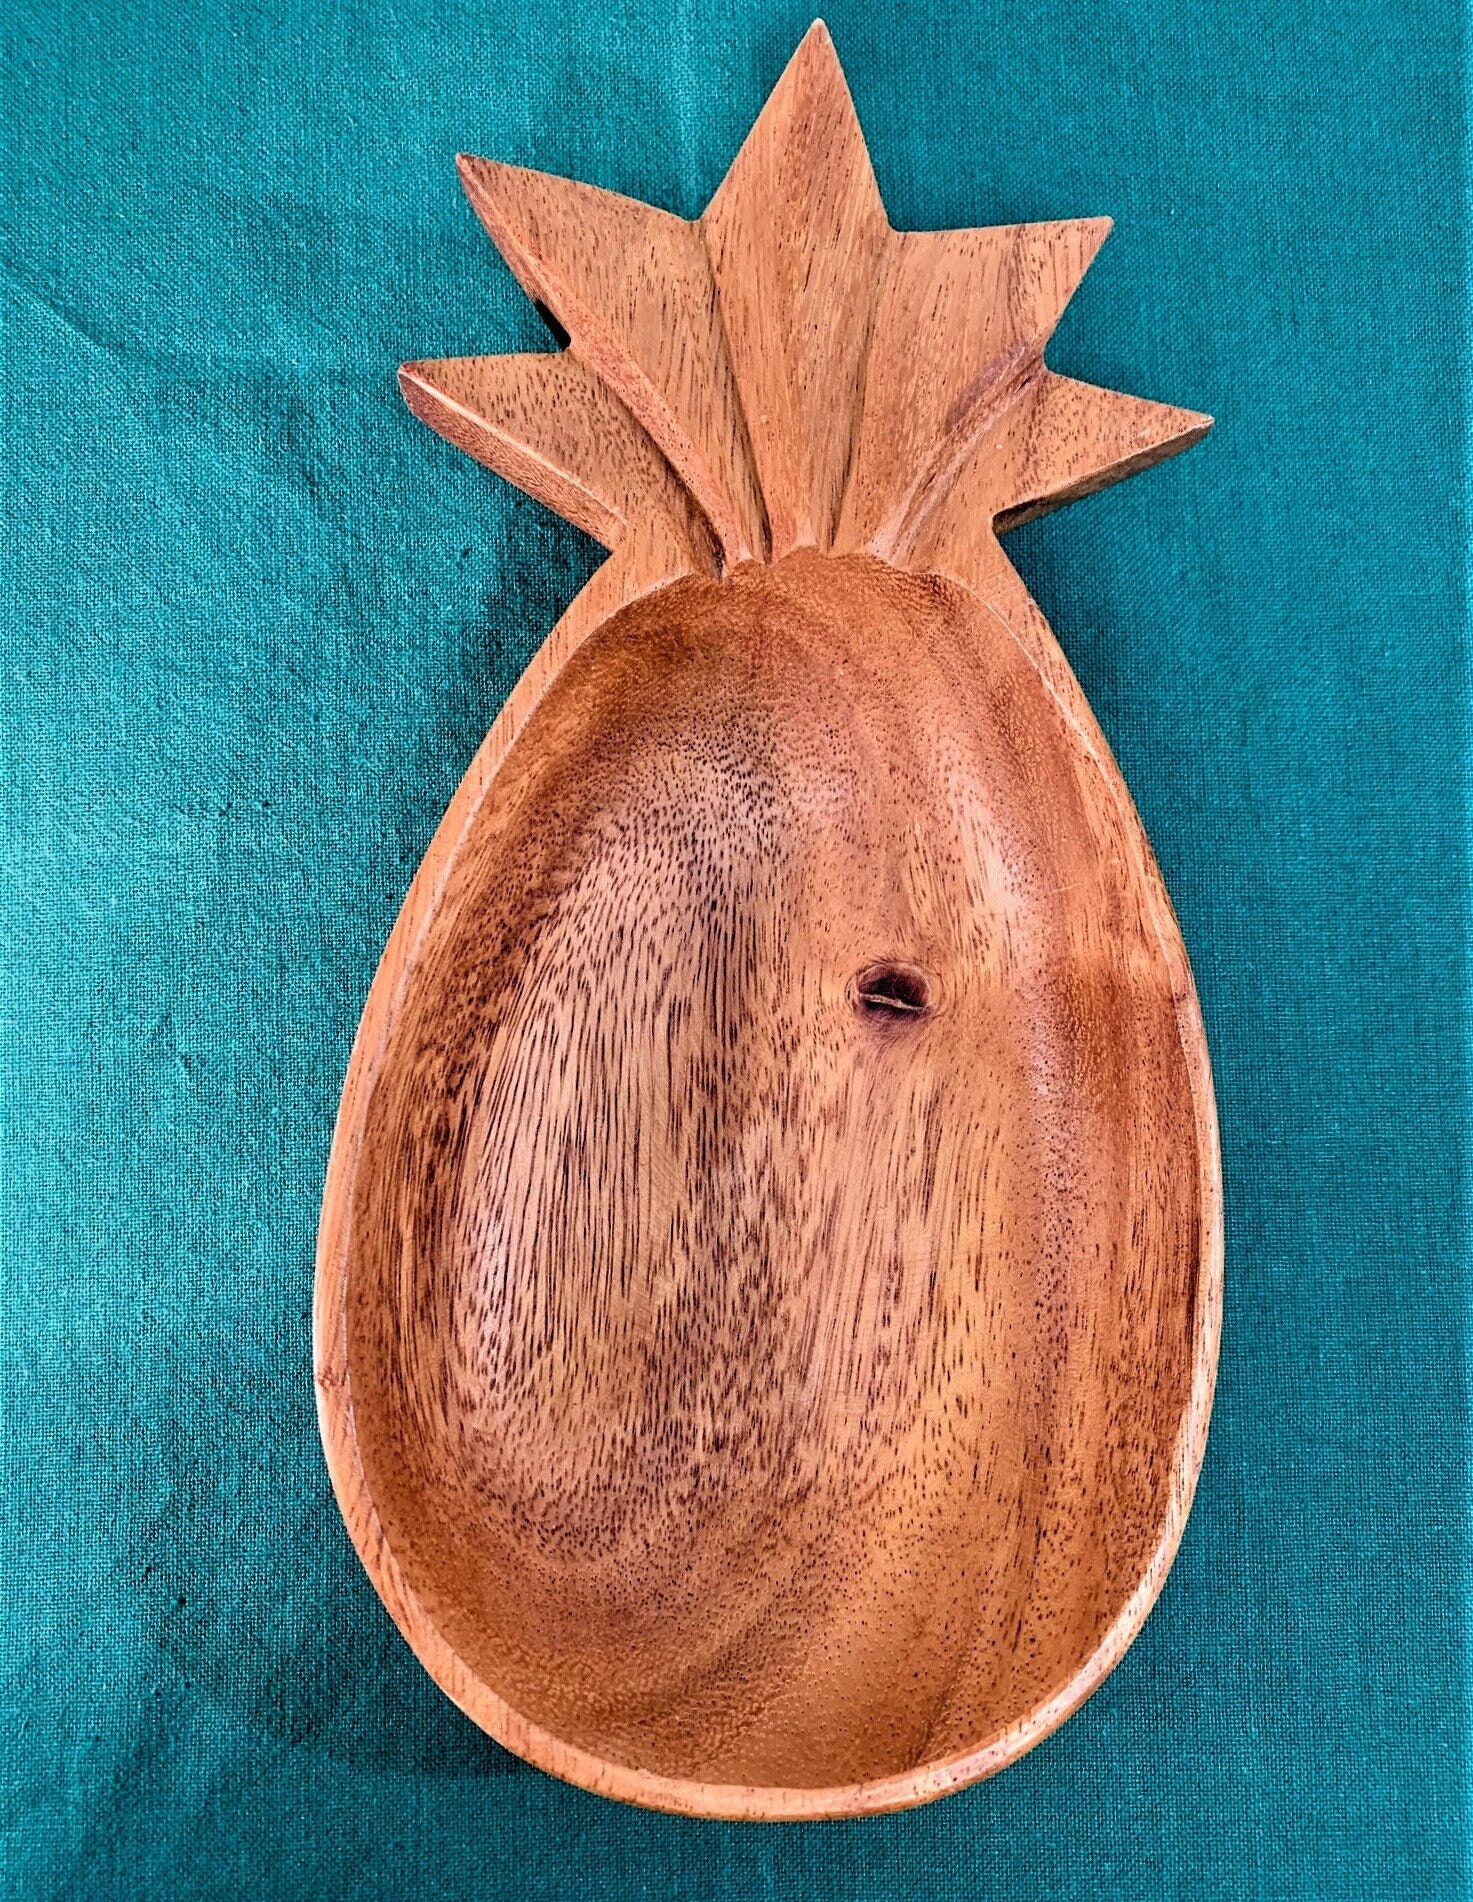 Pineapple Cutting Board 14 in X 6.5 in X 1 in Teak Root Wood | #cin30